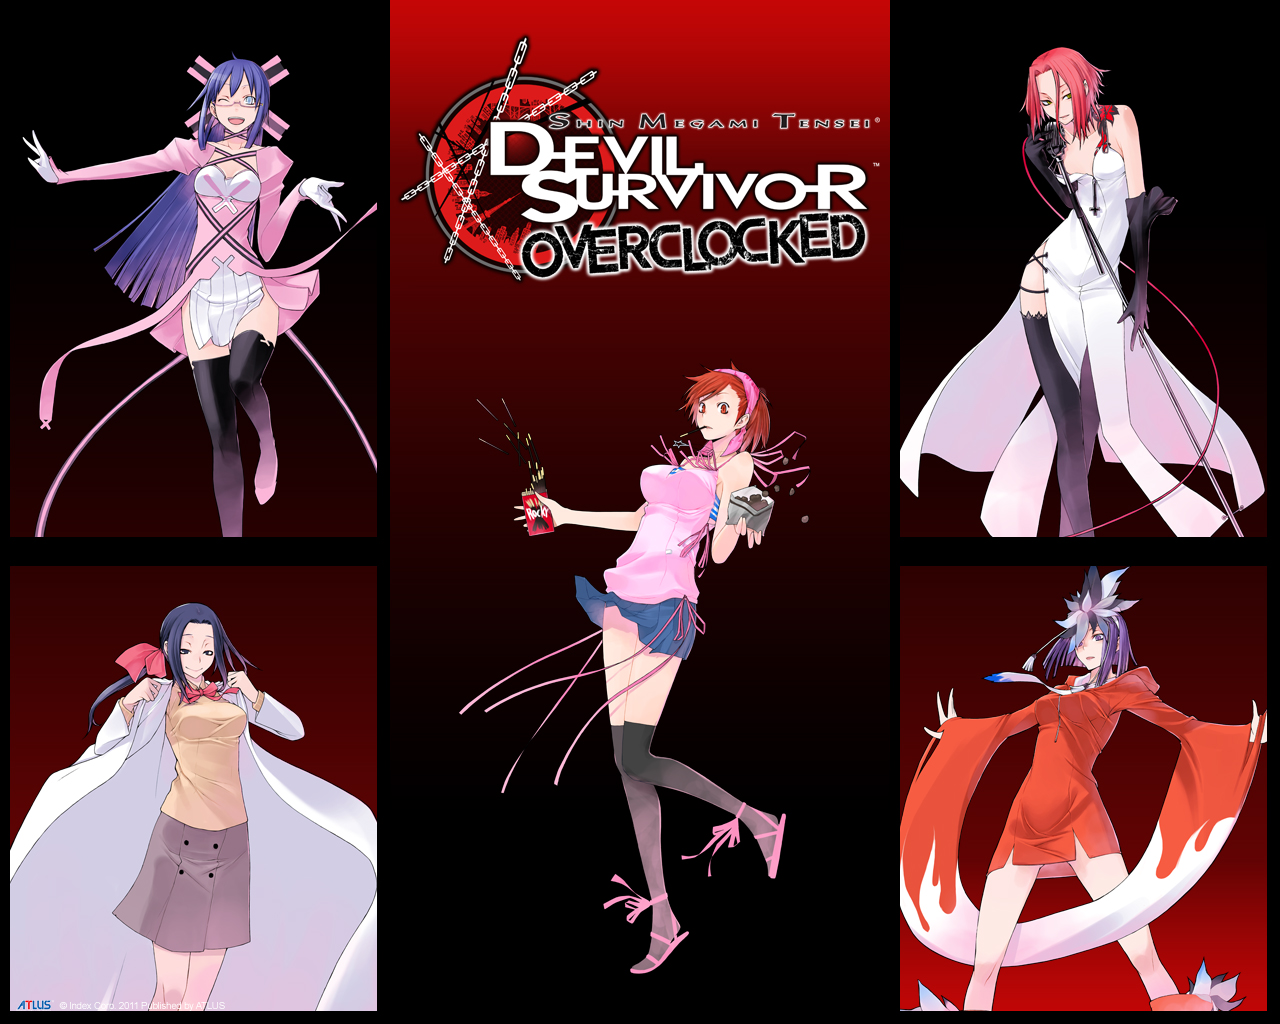 Shin Megami Tensei: Devil Survivor Pics, Video Game Collection